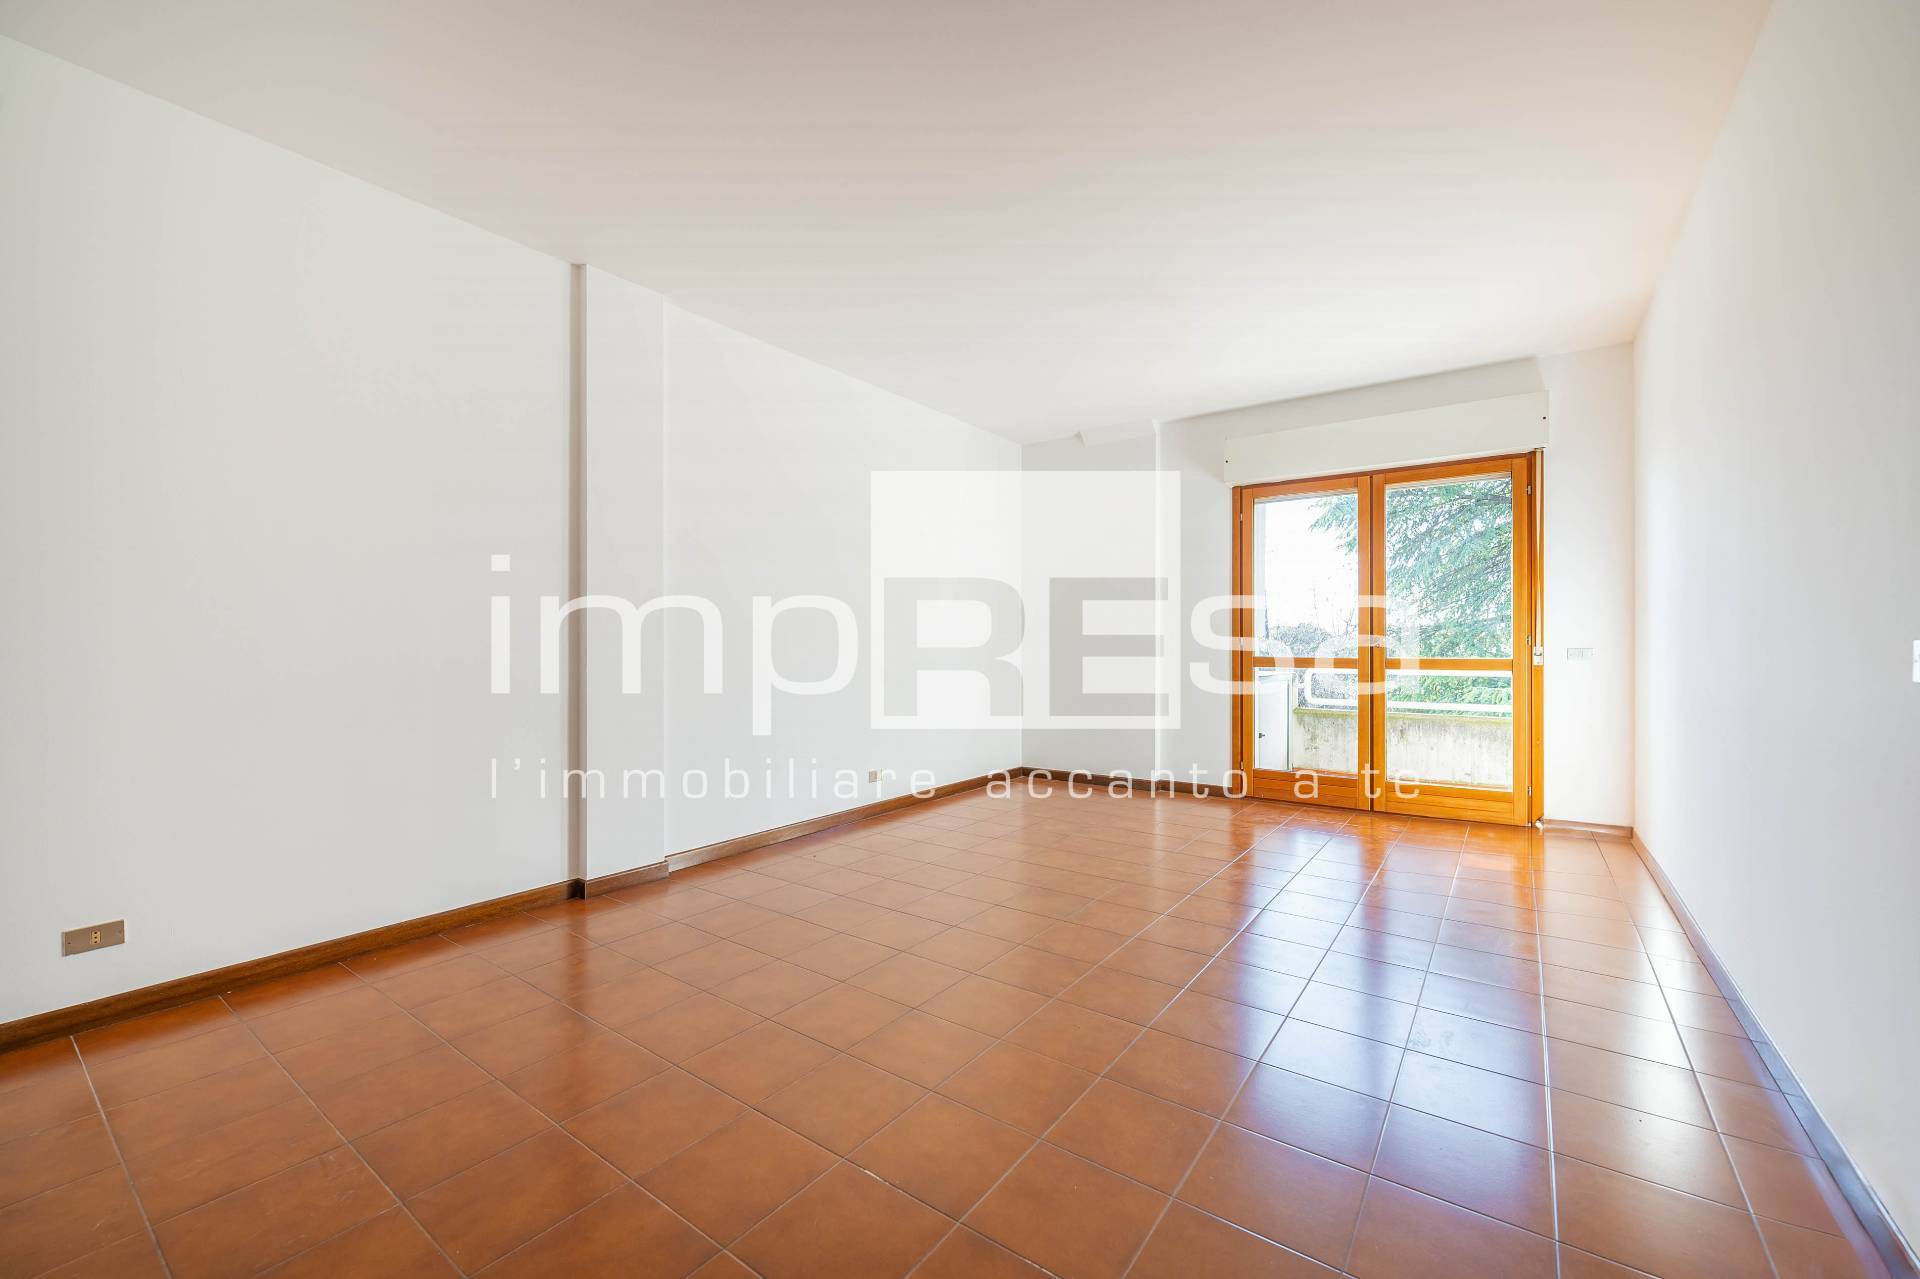 Appartamento in vendita a Fontanafredda, 3 locali, prezzo € 110.000 | PortaleAgenzieImmobiliari.it